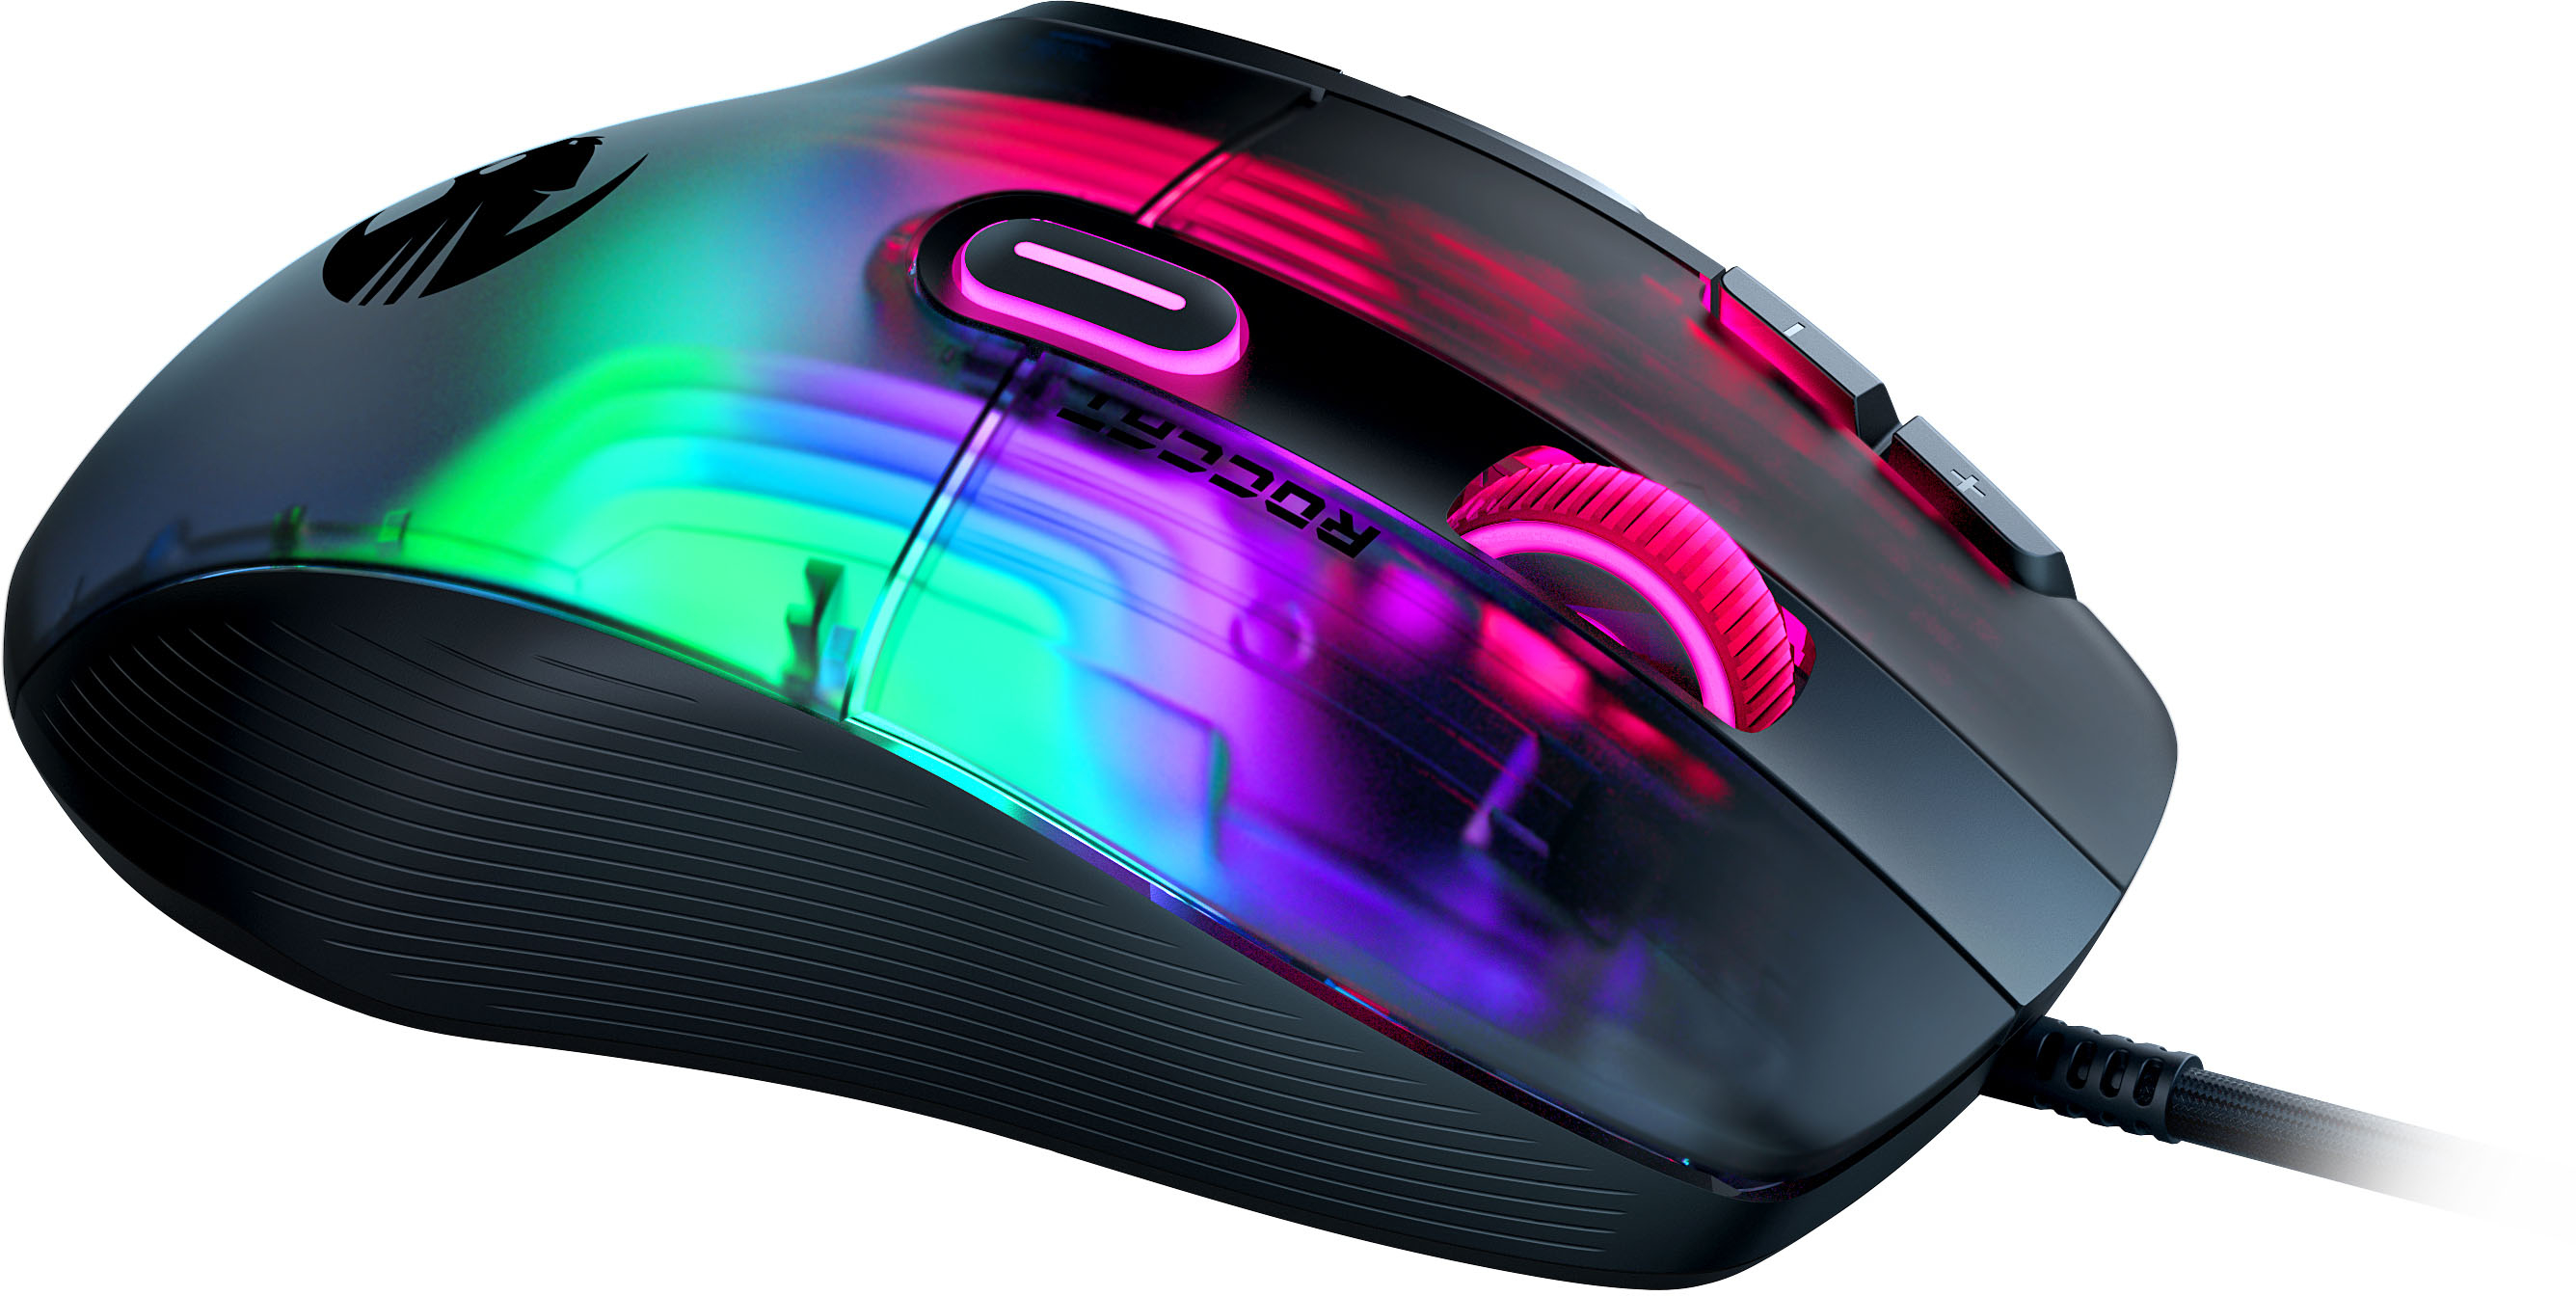 ROCCAT Kone XP RGB Gaming Mouse – Tacos Y Mas